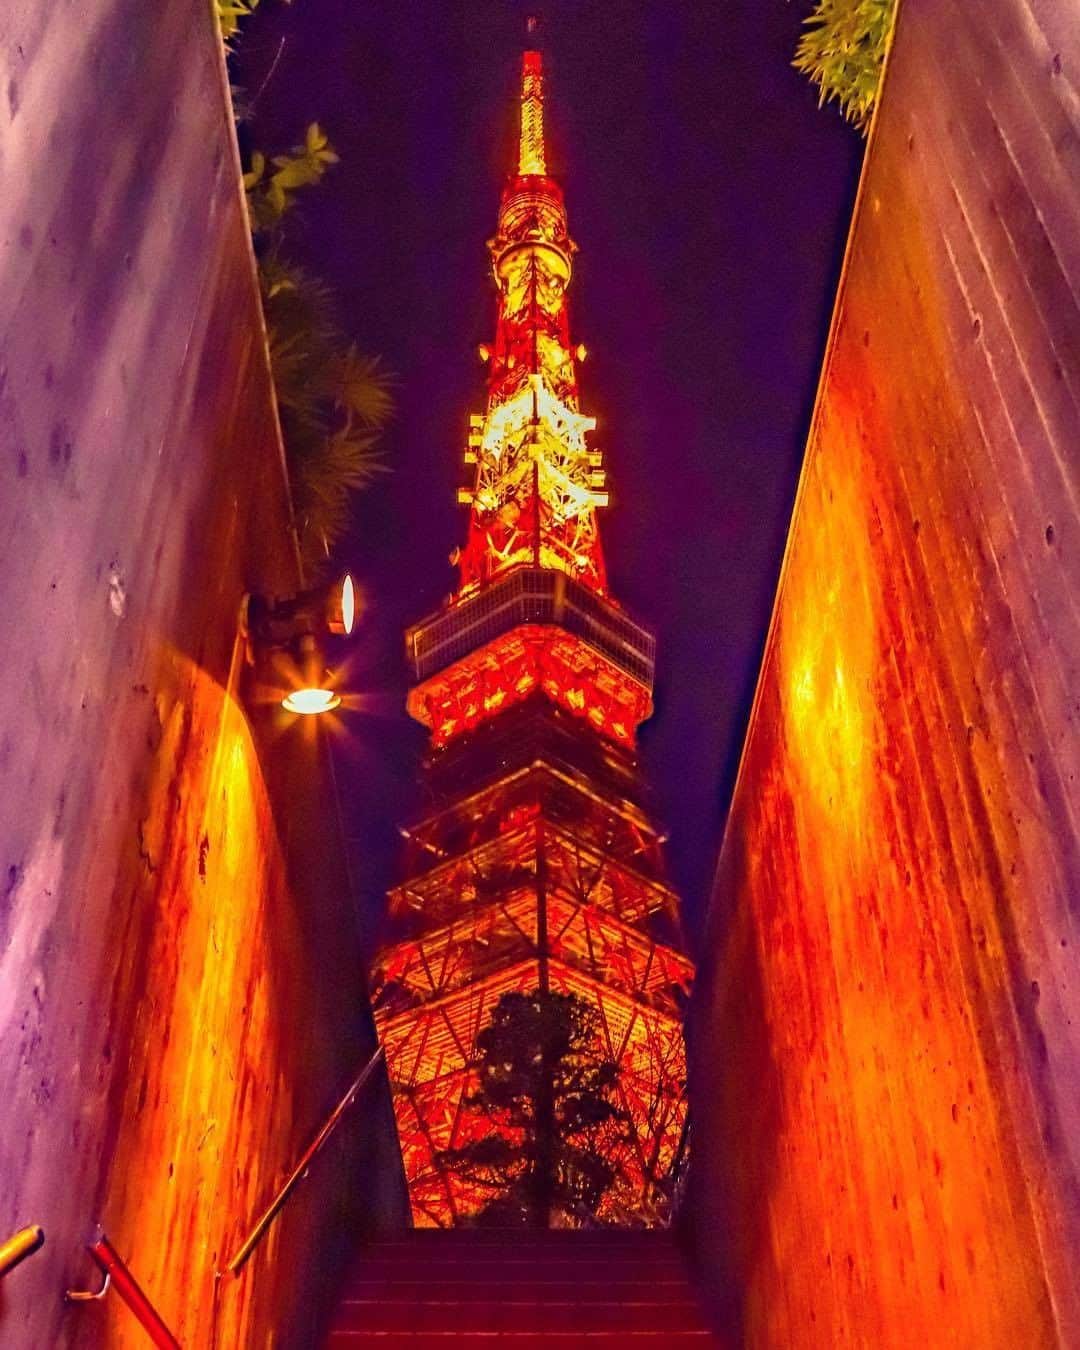 AirAsia (公式) のインスタグラム：「✈︎ Tokyo tower×Night×lighting-up  素敵なお写真ありがとうございます！ エアアジアでは、#エアアジア360 をつけて投稿された素敵な写真を紹介させていただいております❤️ぜひ、各就航地や機体などのお写真をInstagramでご投稿ください📸 ✈︎✈︎✈︎✈︎✈︎✈︎✈︎✈︎✈︎✈︎✈︎✈︎✈︎✈︎✈︎ (Photo by @yuima_ru3_ さん) スカイツリーのpicが続いたので東京タワー🗼定番スポットで😅 #東京タワー #東京タワー🗼  #東京夜景 #夜景 #フォトスポット #フォトジェニック #フォトジェニックスポット #カメラ好きな人と繋がりたい #写真好きな人と繋がりたい #誰かに見せたい風景 #誰かに見せたい景色 #tokyotower #tokyotower🗼 #japan #tokyo #nightview #nightphotography #tower #nightgram #instajapan #instagramjapan #nightlights #nightcity #tokyocameraclub #canoneos6dmark2 #夜景ら部 #広がり同盟 #東京カメラ部 #flysas」